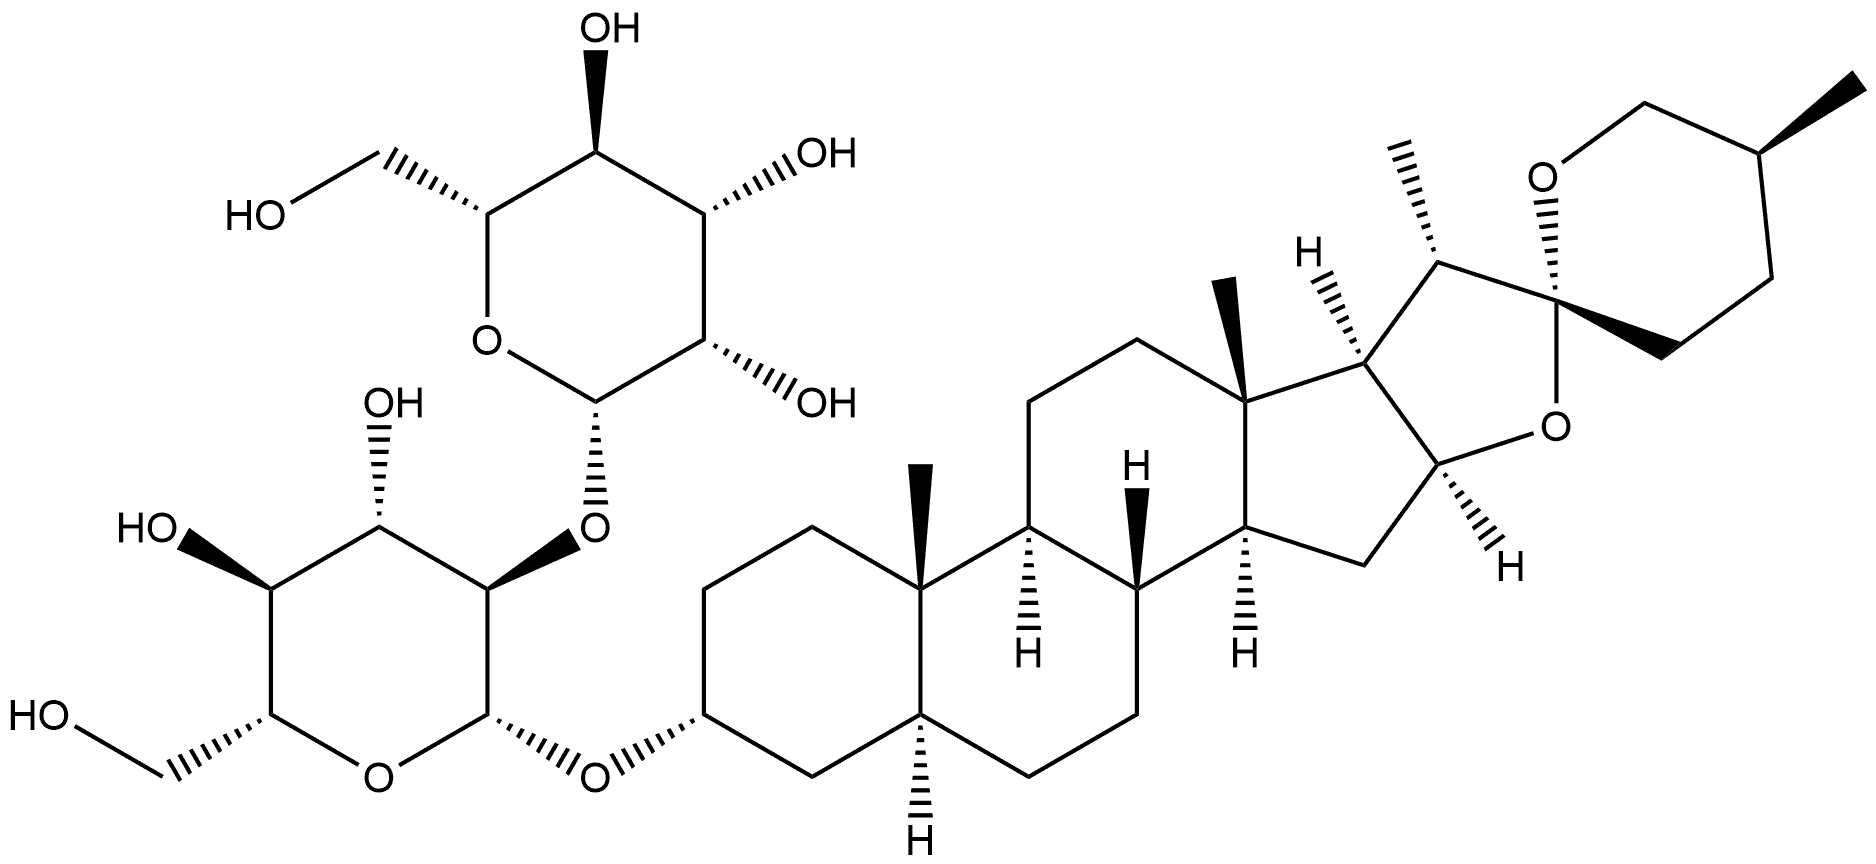 942621-71-8 β-D-Glucopyranoside, (3β,5β,25S)-spirostan-3-yl 2-O-β-D-mannopyranosyl-